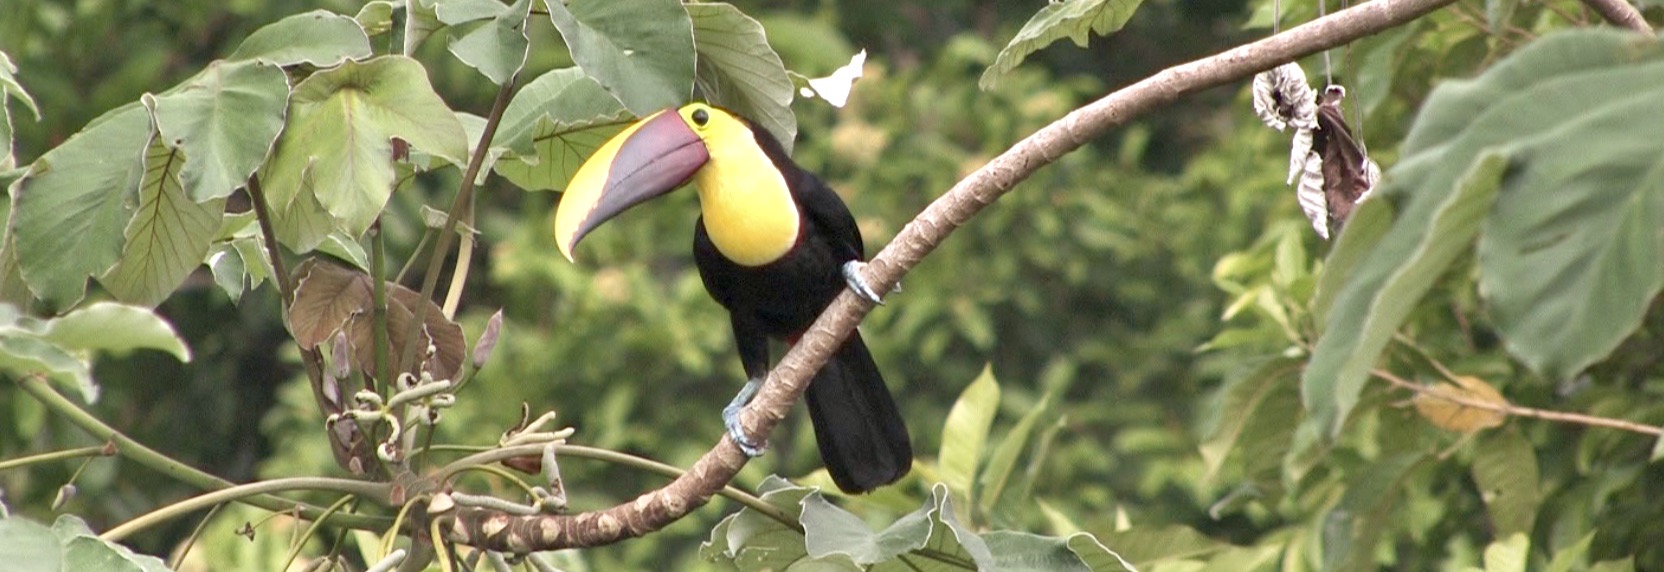 Birding on the Osa Peninsula Costa Rica Corcovado National Park